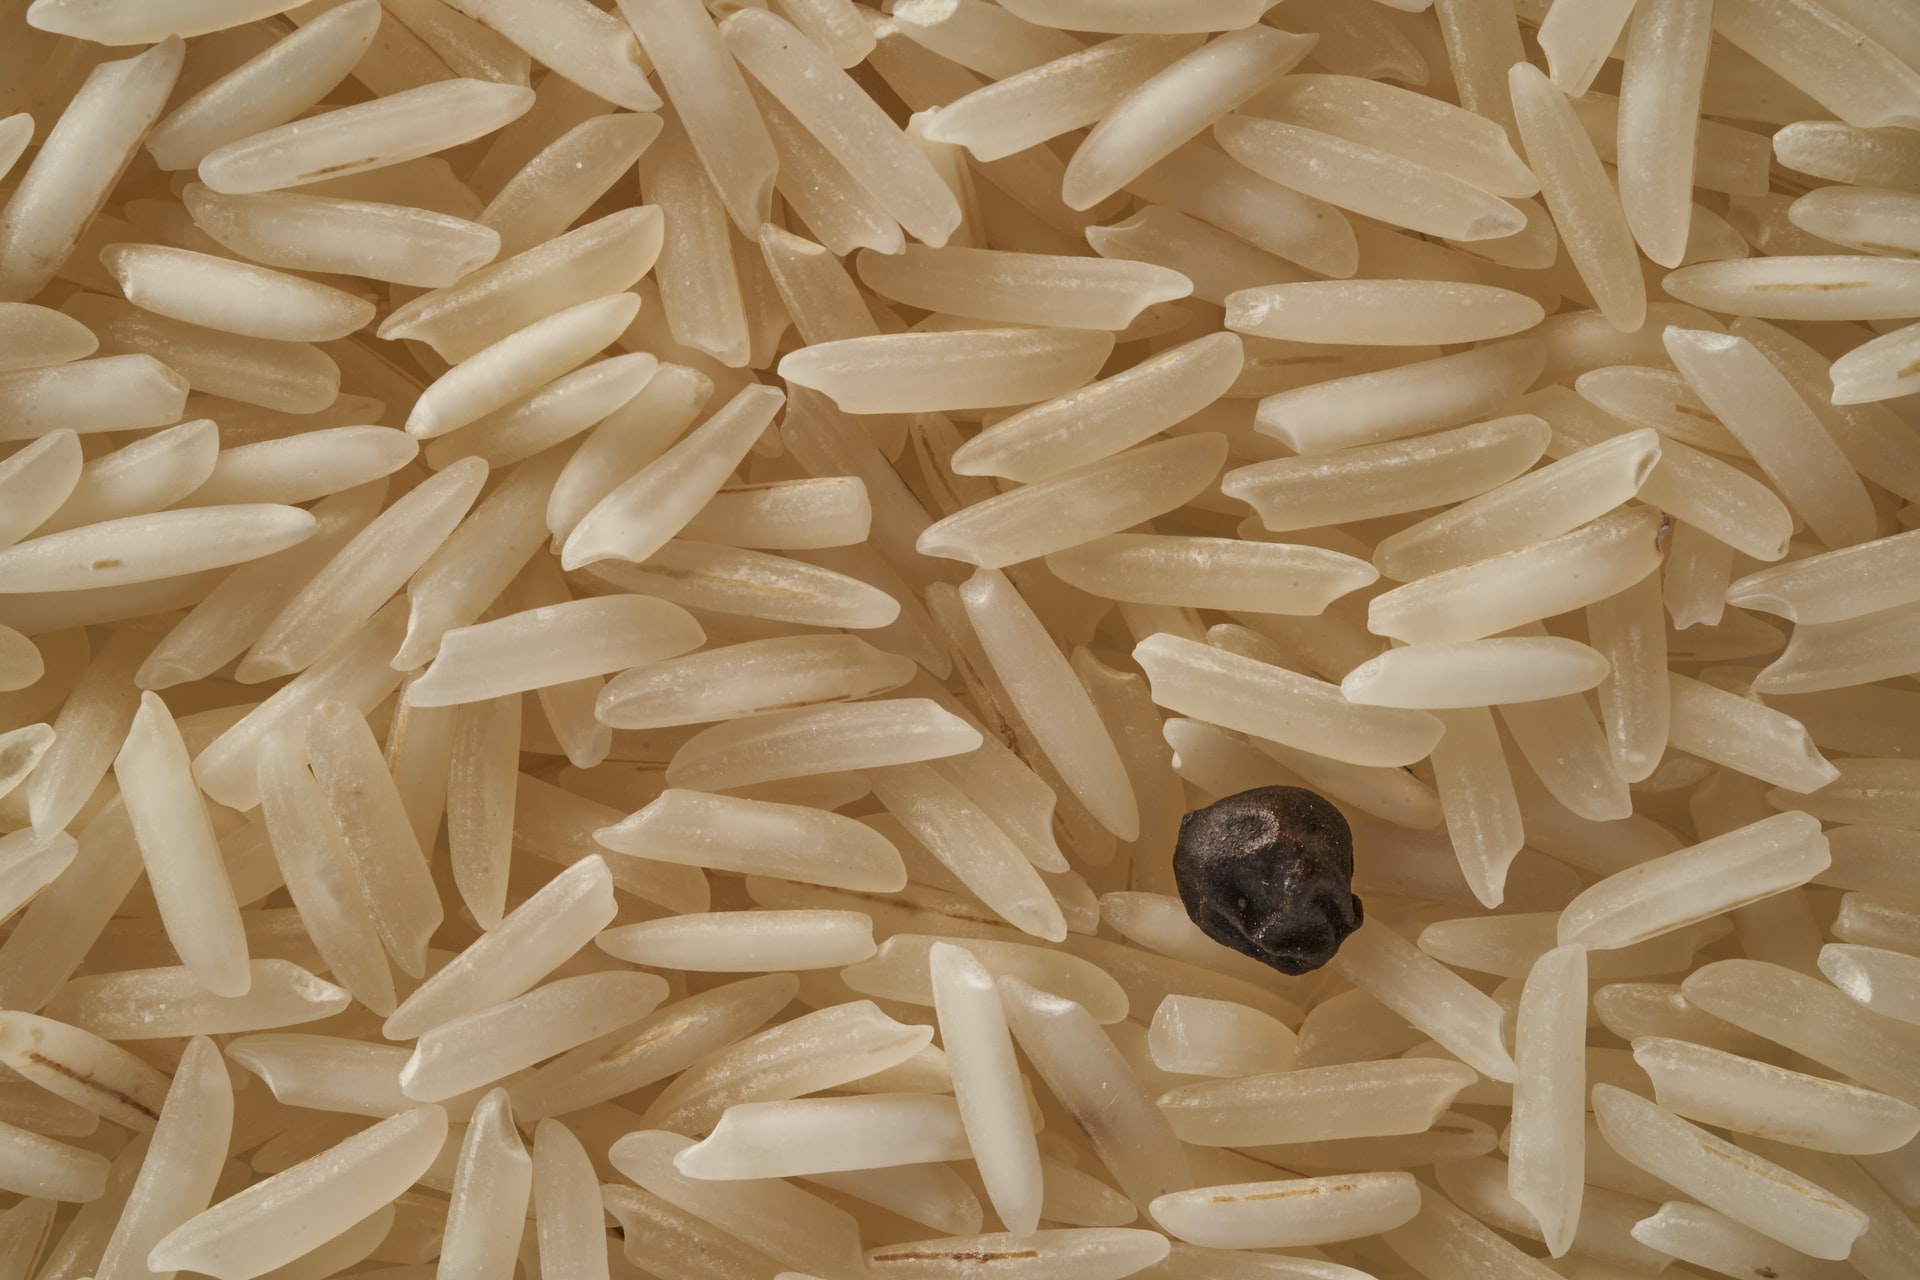 Cozinhar arroz e guardar para outro dia pode causar intoxicação alimentar